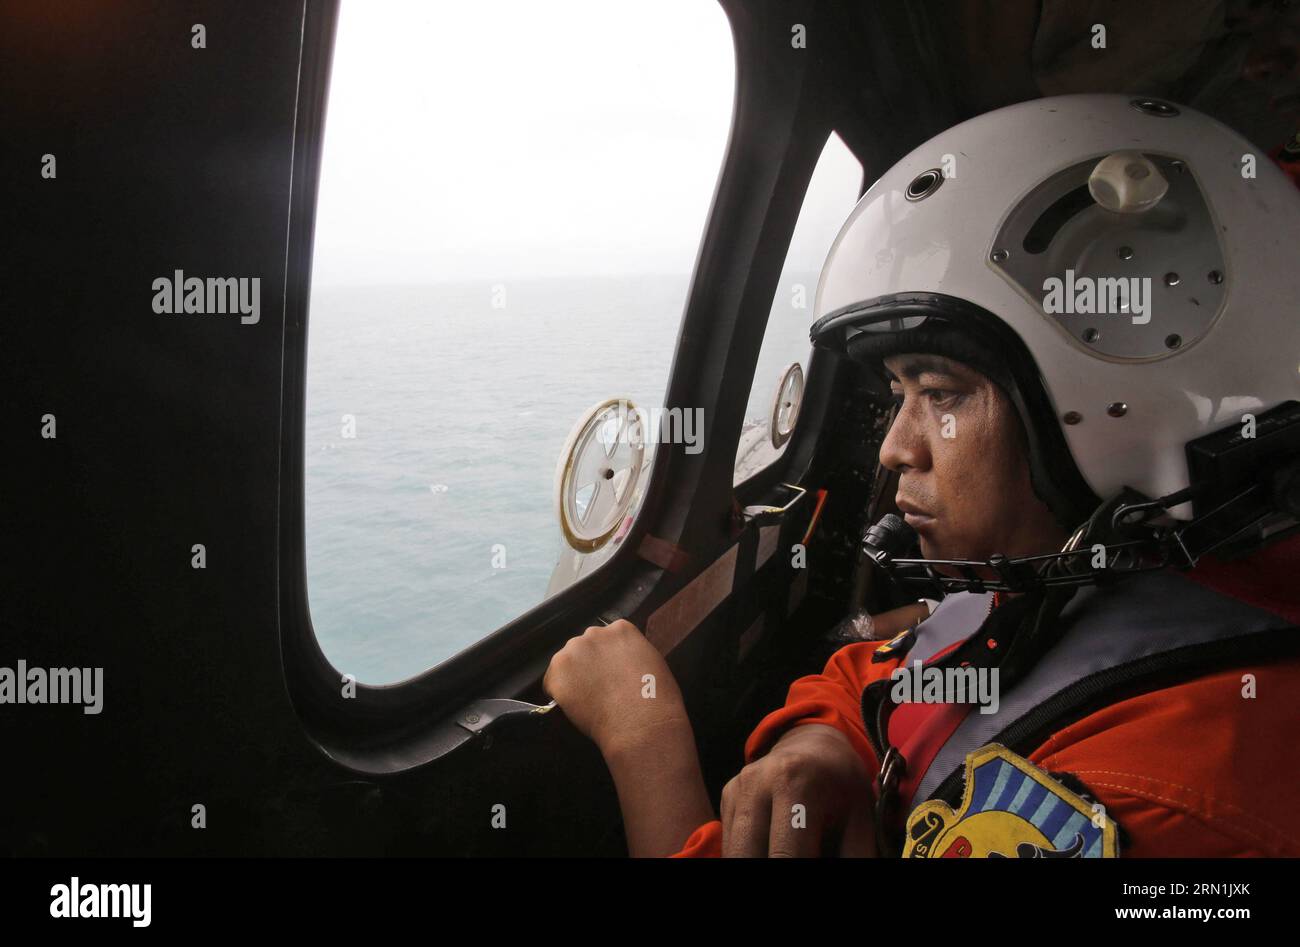 (150106) -- PANGKALAN BUN, 6. Januar 2015 -- Ein Besatzungsmitglied eines Helikopters der indonesischen Luftwaffe NAS 332 Super Puma schaut aus dem Fenster während einer Suchoperation nach den Opfern von AirAsia QZ 8501 über dem Java-Meer vor Pangkalan Bun, Indonesien, 6. Januar 2015. Die Suchaktion für AirAsia-Flug QZ8501 wird sich am Dienstag leicht nach Osten ausbreiten, da das Wetter und die Strömungen Trümmer in diese Richtung ziehen, sagte der Leiter der indonesischen Rettungsagentur. /Achmad Ibrahim) INDONESIA-PANGKALAN BUN-AIRASIA-SEARCH Pool PUBLICATIONxNOTxINxCHN Pangkalan Bun Jan 6 2015 ein Besatzungsmitglied von to Indonesia Air Stockfoto